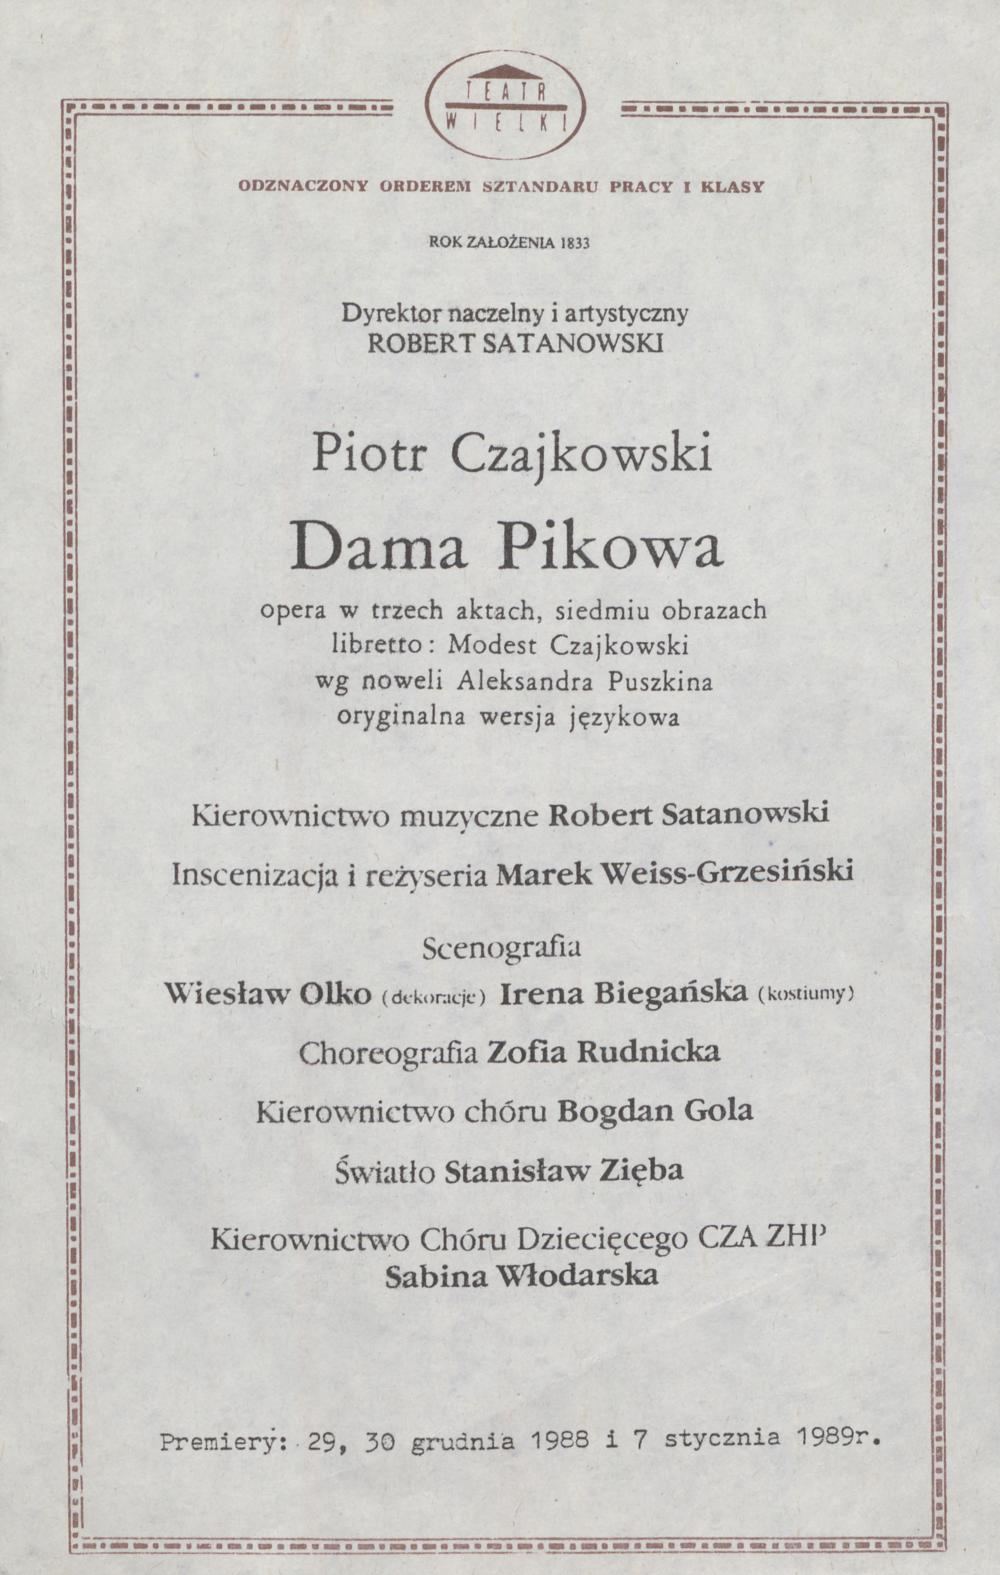 Wkładka premierowa – premiera II „Dama pikowa” Piotr Czajkowski 30-12-1988